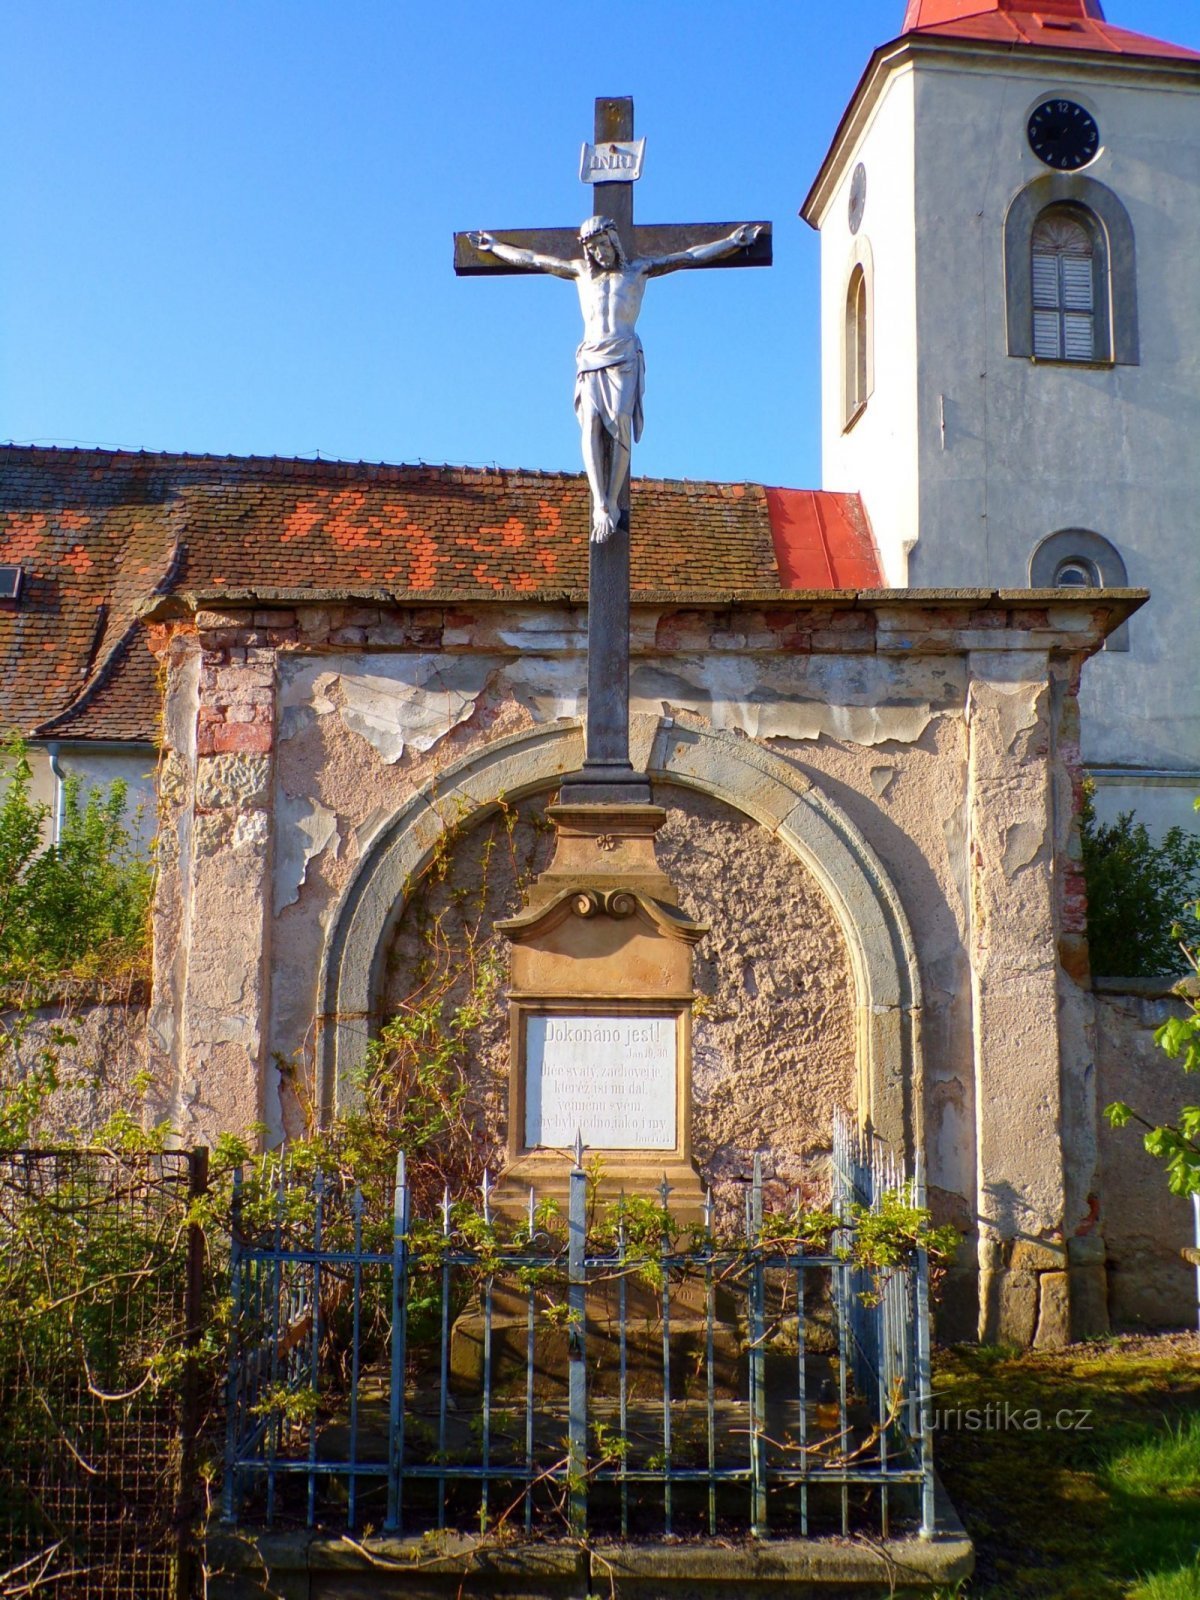 Thập tự giá tại nhà thờ St. Margaret (Semonice, ngày 8.5.2022 tháng XNUMX năm XNUMX)